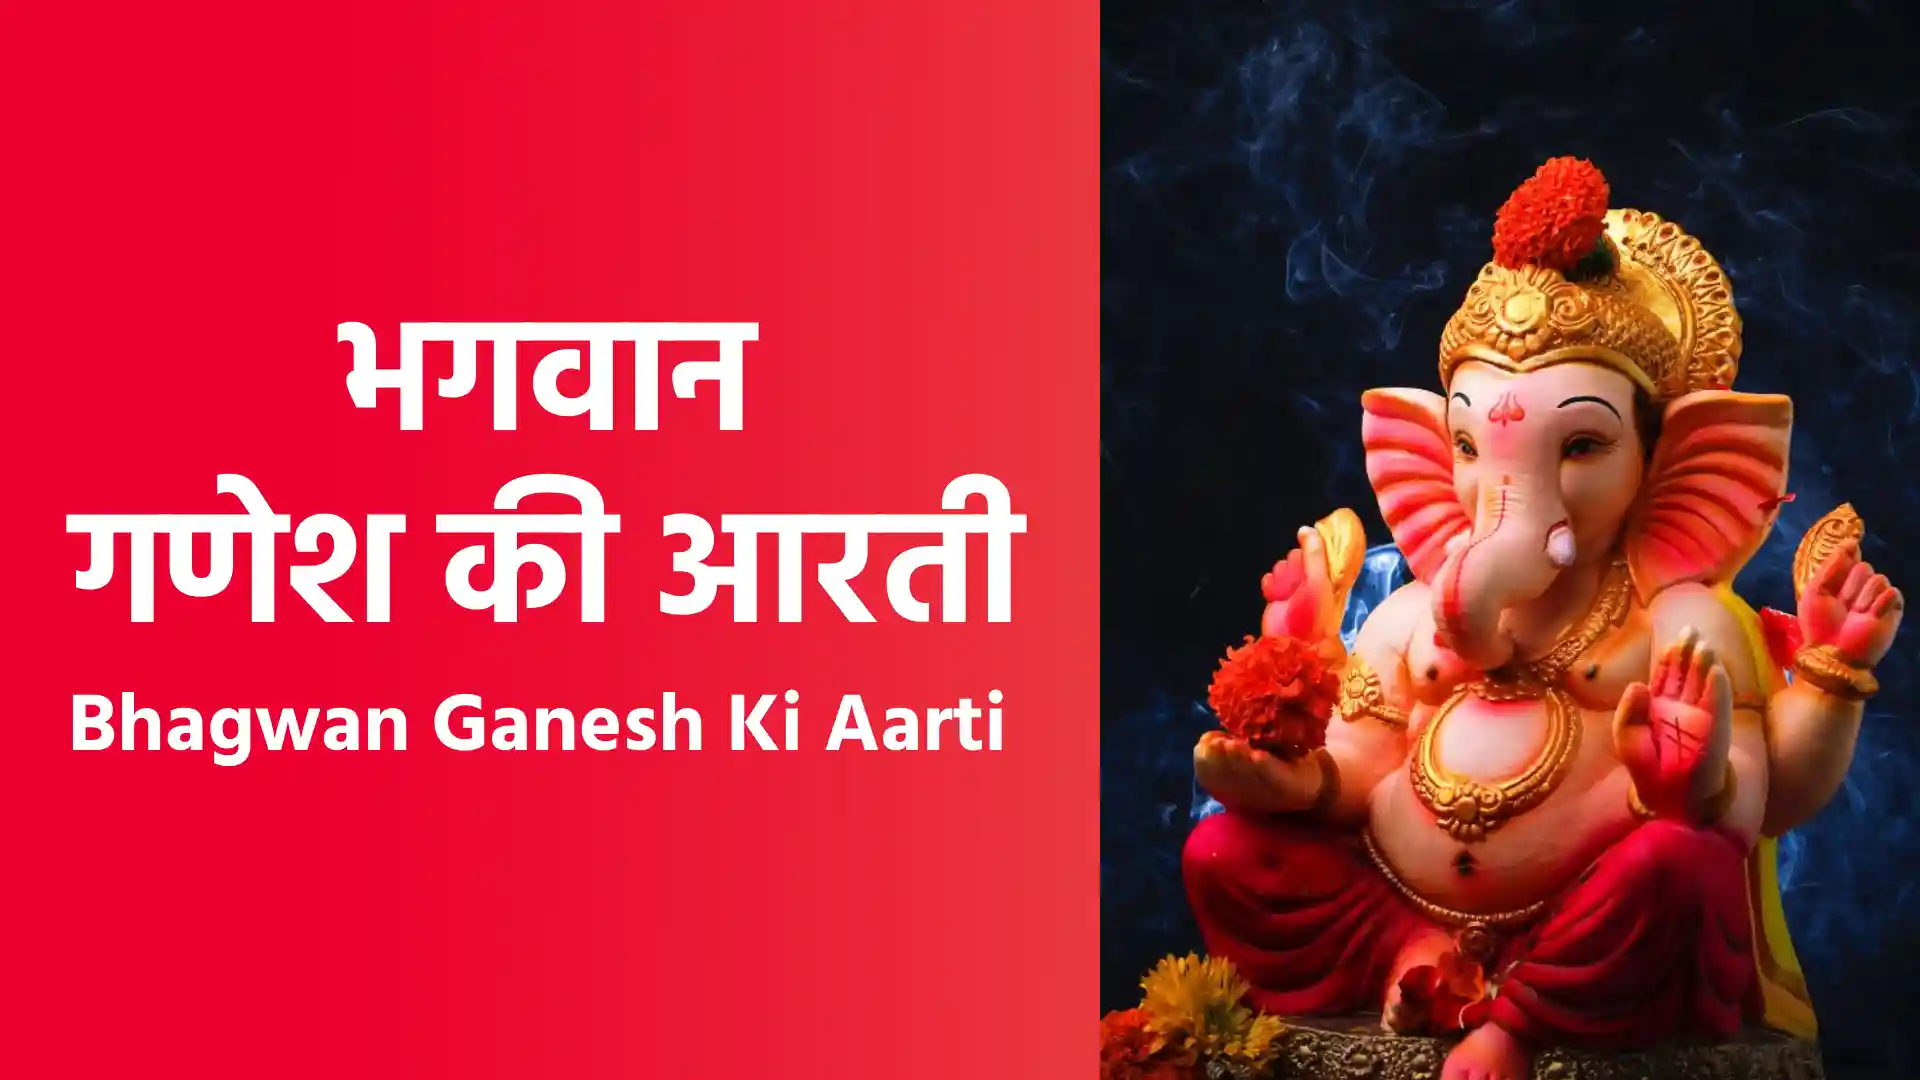 भगवान गणेश की आरती _ Bhagwan Ganesh Ki Aarti image